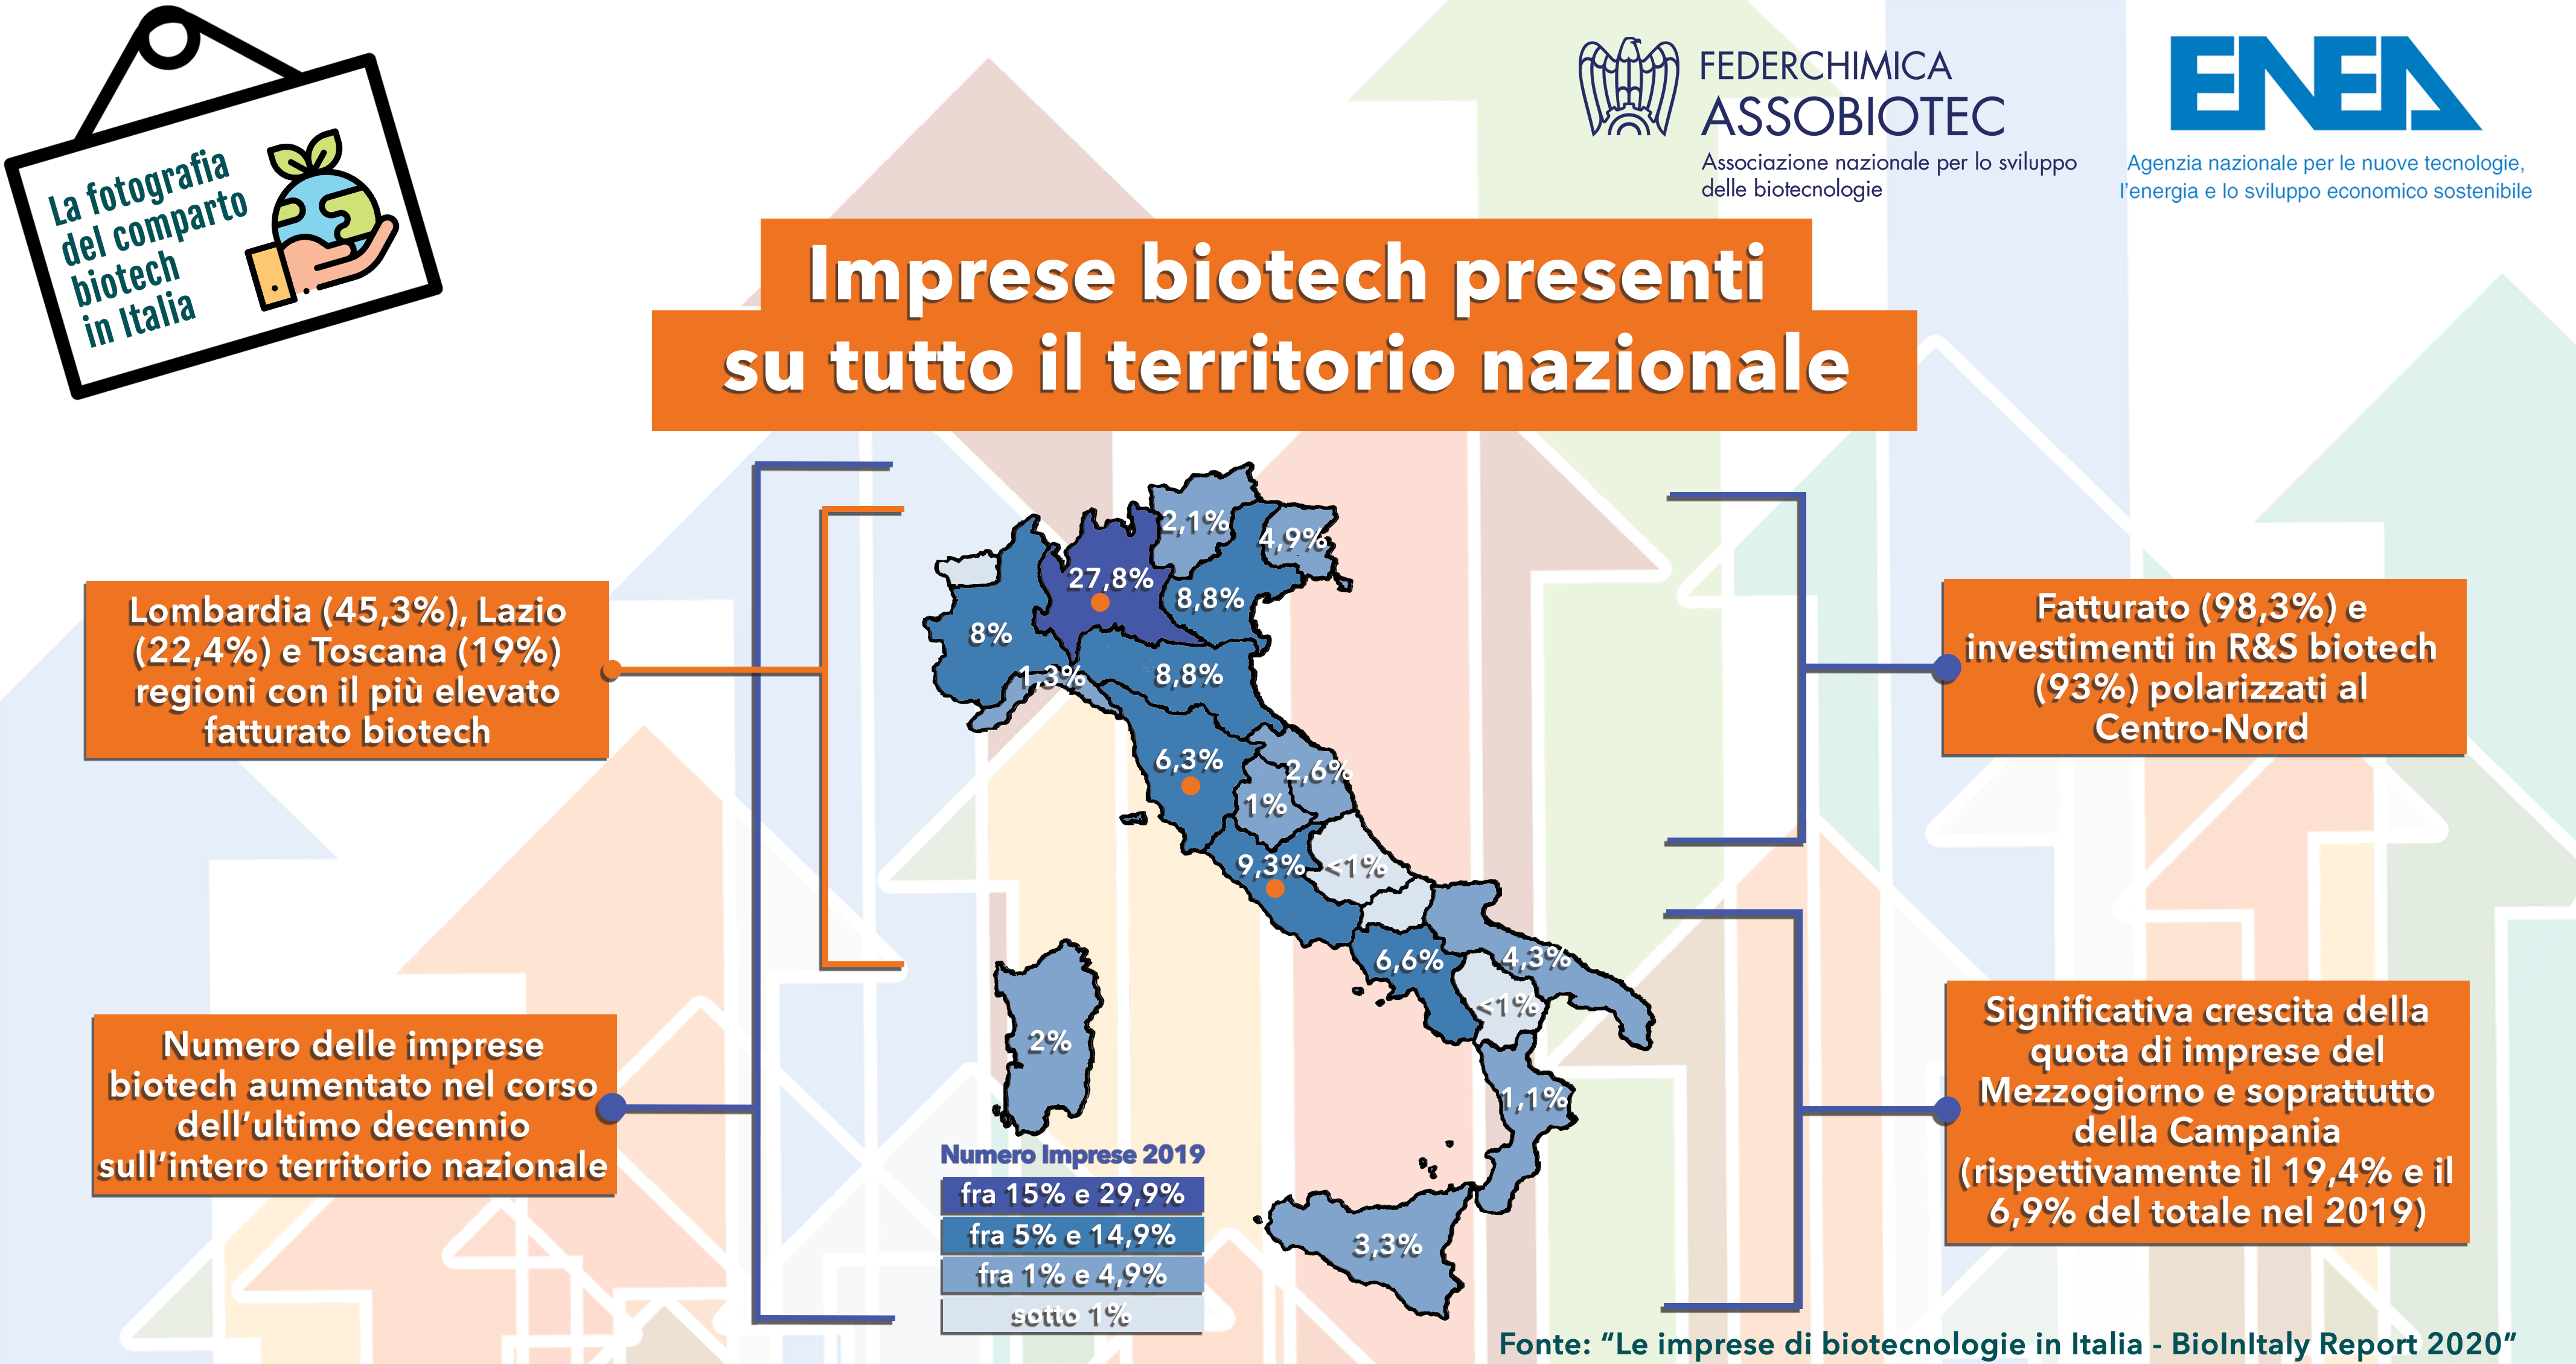 Imprese biotech presenti sulterritorio nazionale infografica